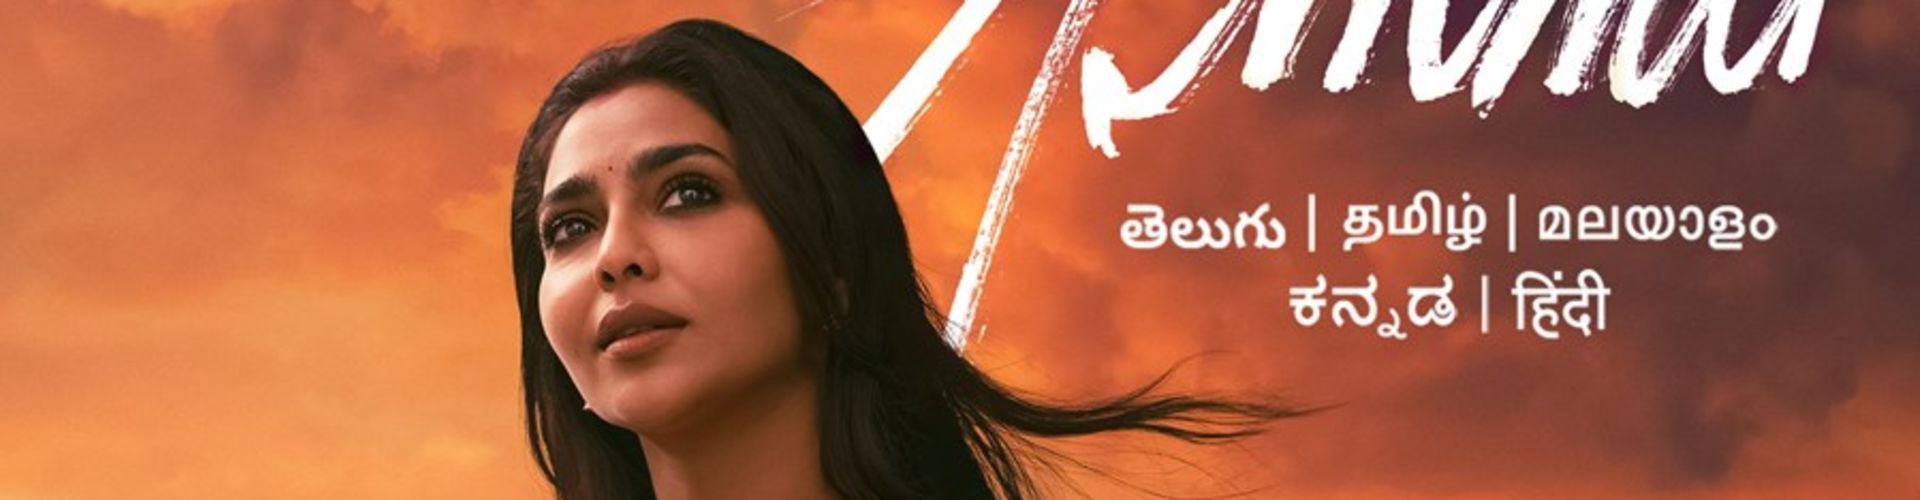 Aishwarya Lekshmi Starrer Ammu Gets A Teaser And Release Date